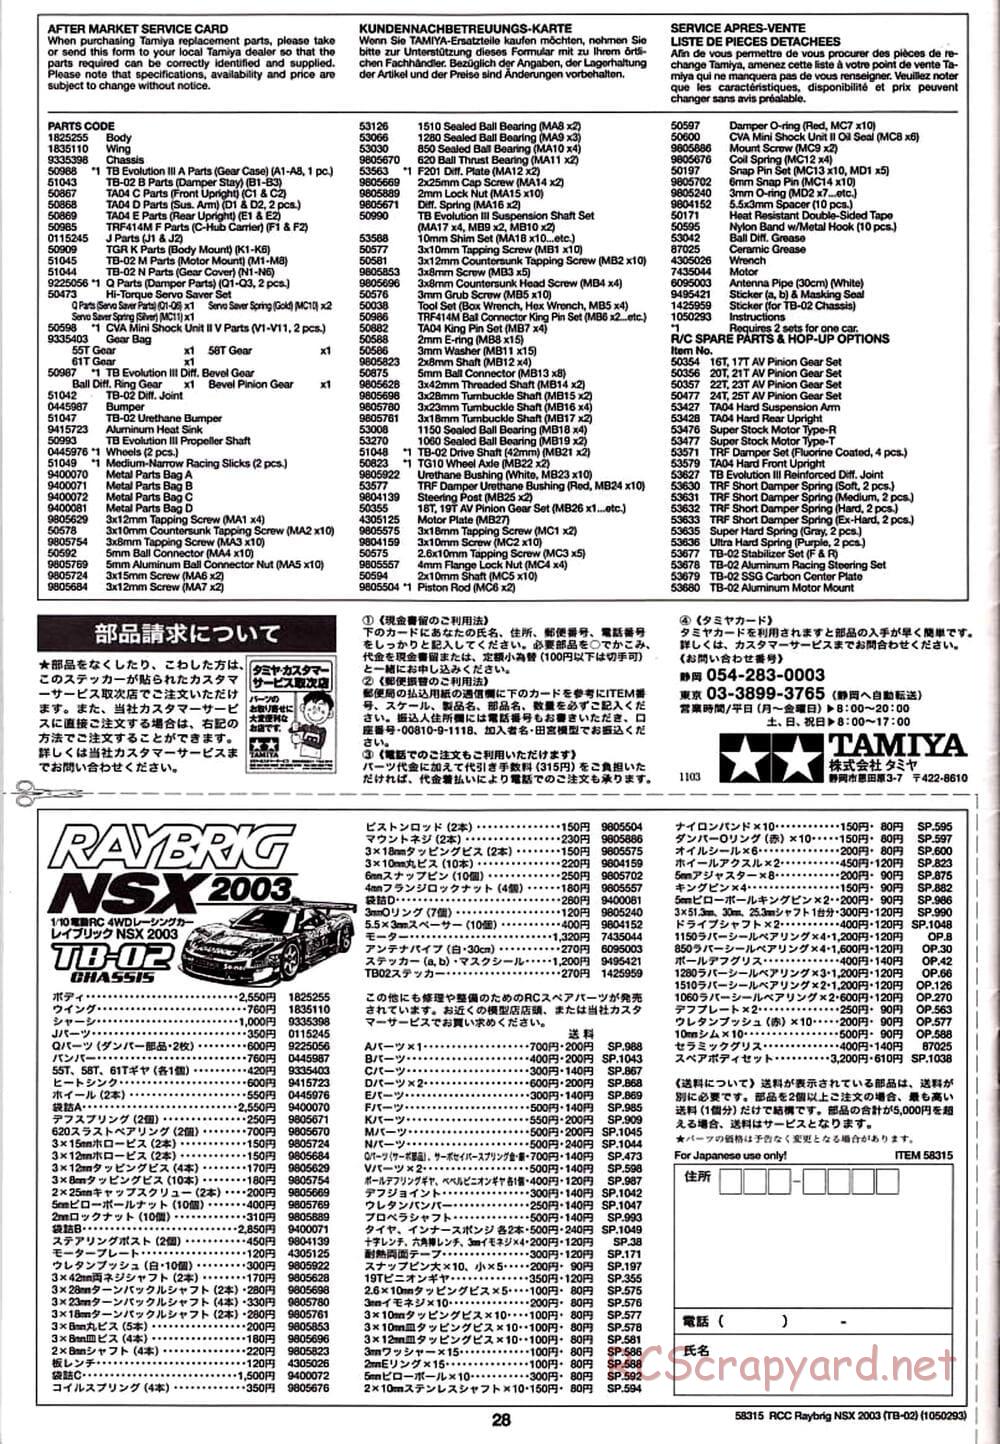 Tamiya - Raybrig NSX 2003 - TB-02 Chassis - Manual - Page 28